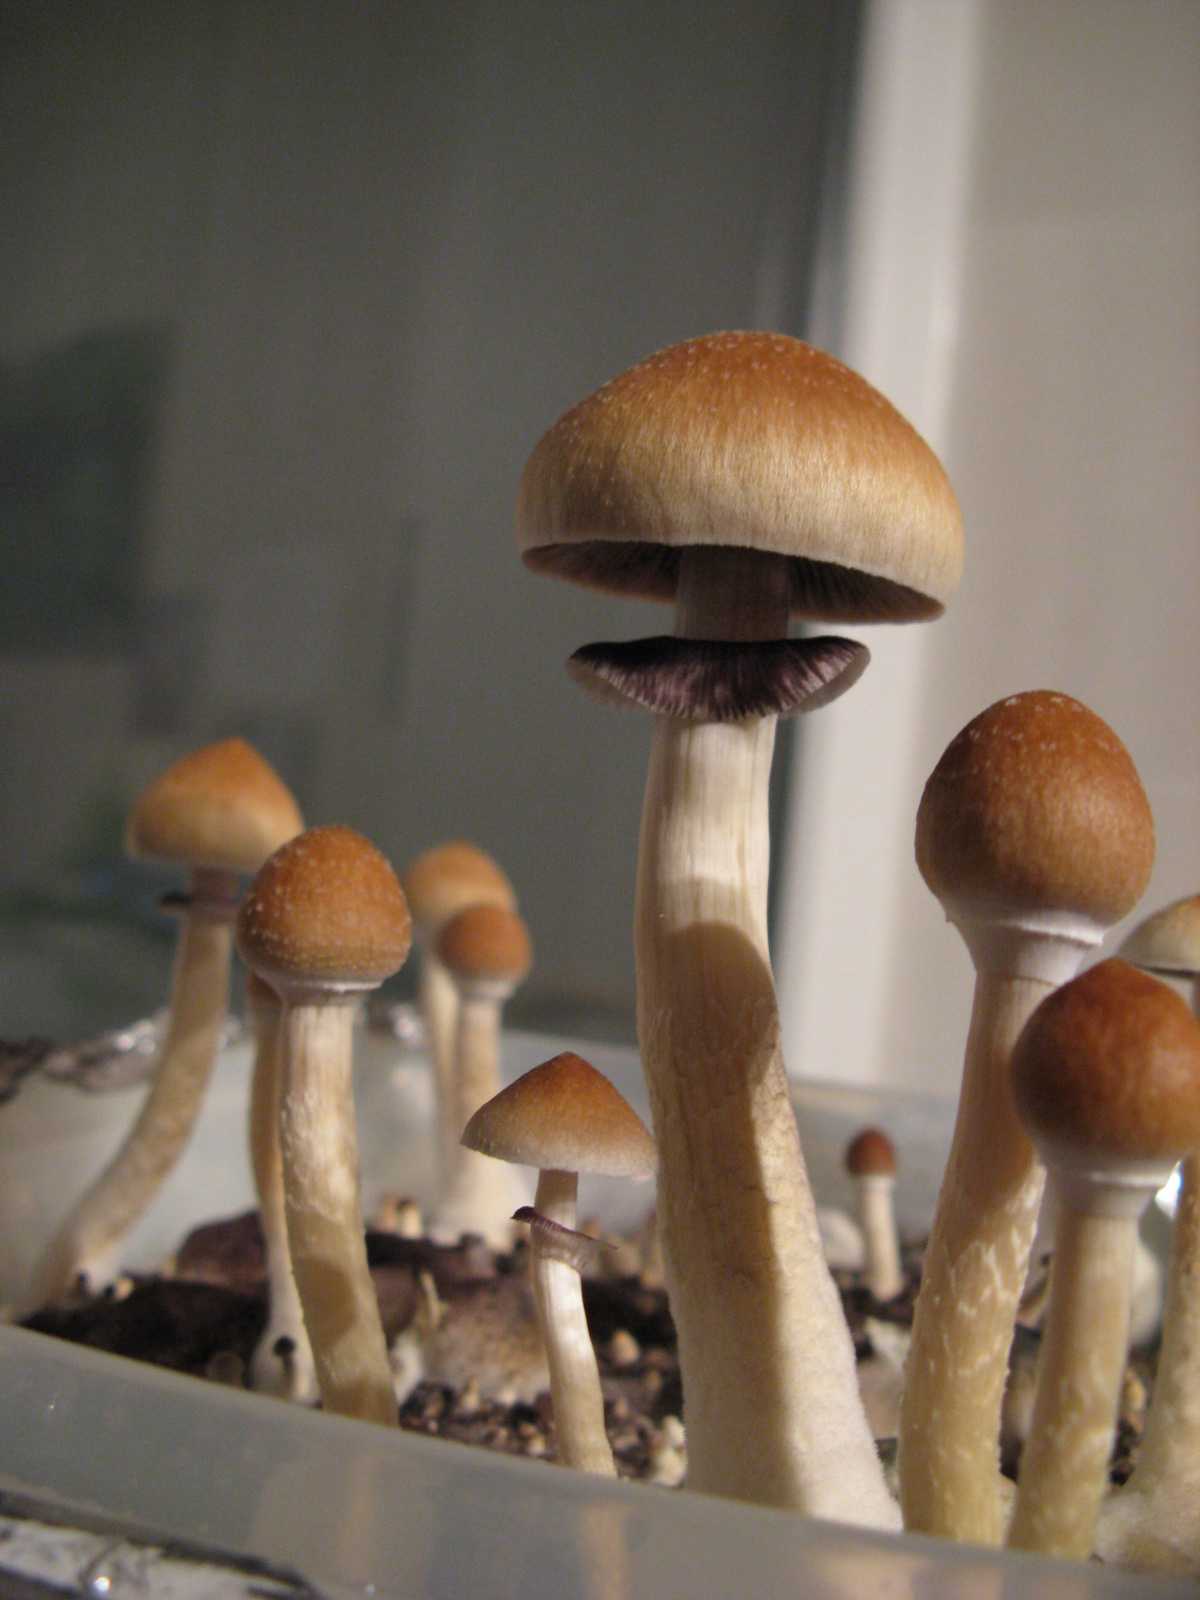 Выращивание грибов Psilocybe cubensis в индивидуальном масштабе варьируется...